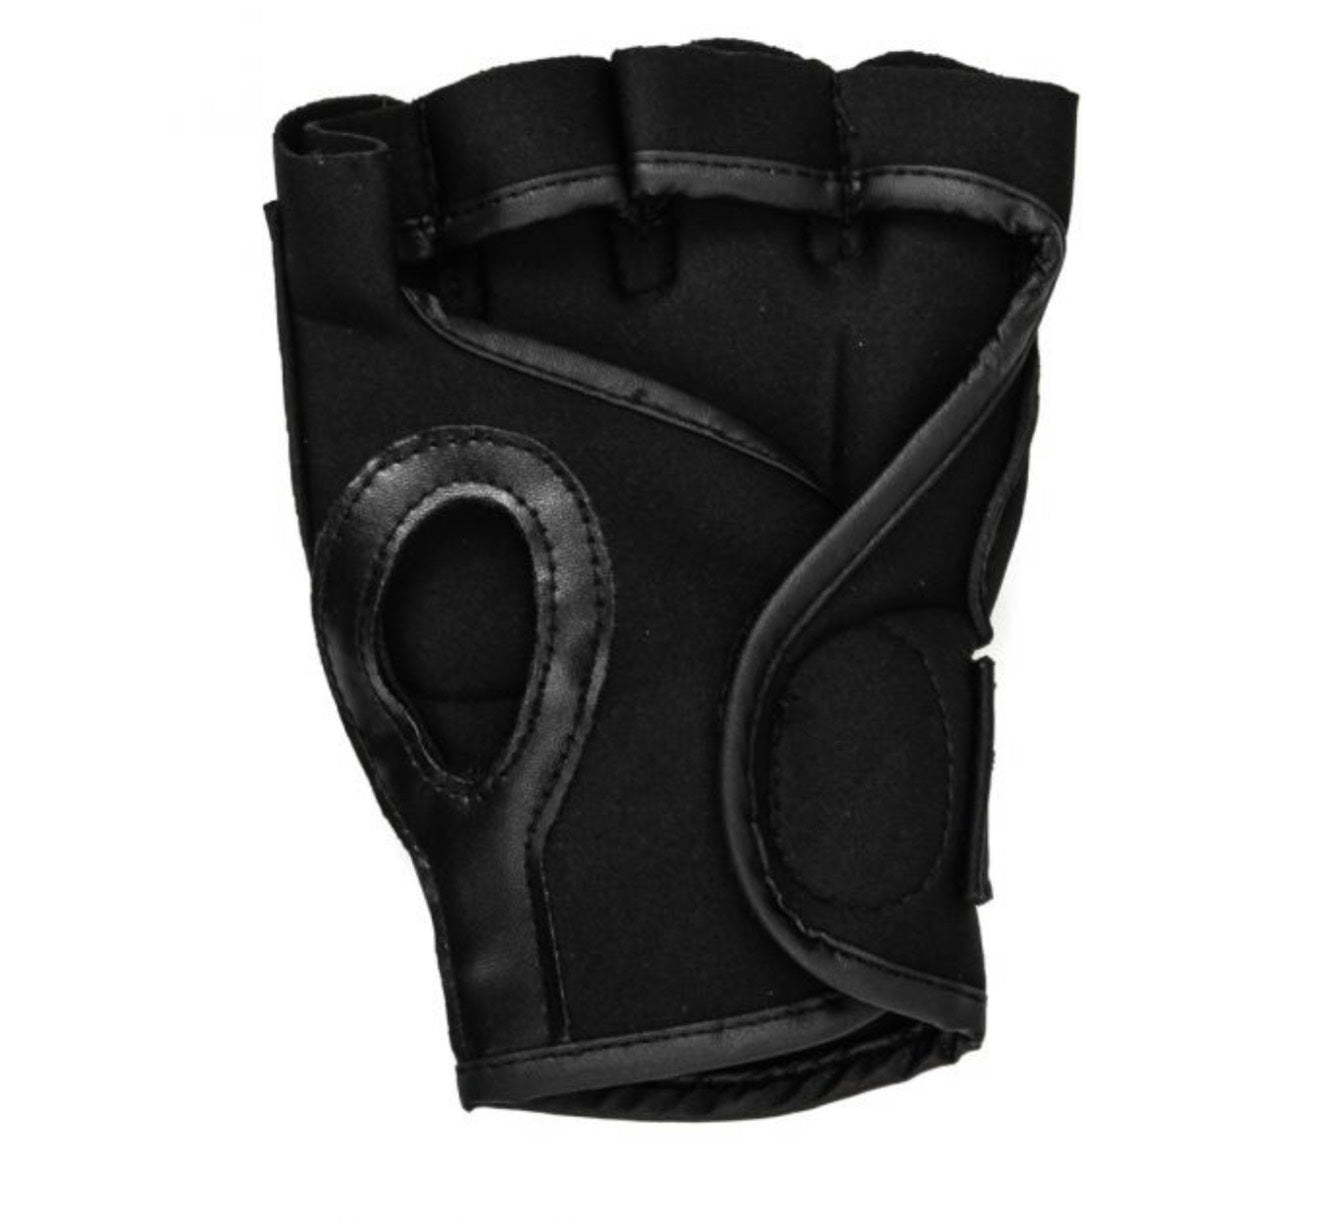 Booster Gel Knuckle Gloves Fitness Collection - SUPER EXPORT SHOP